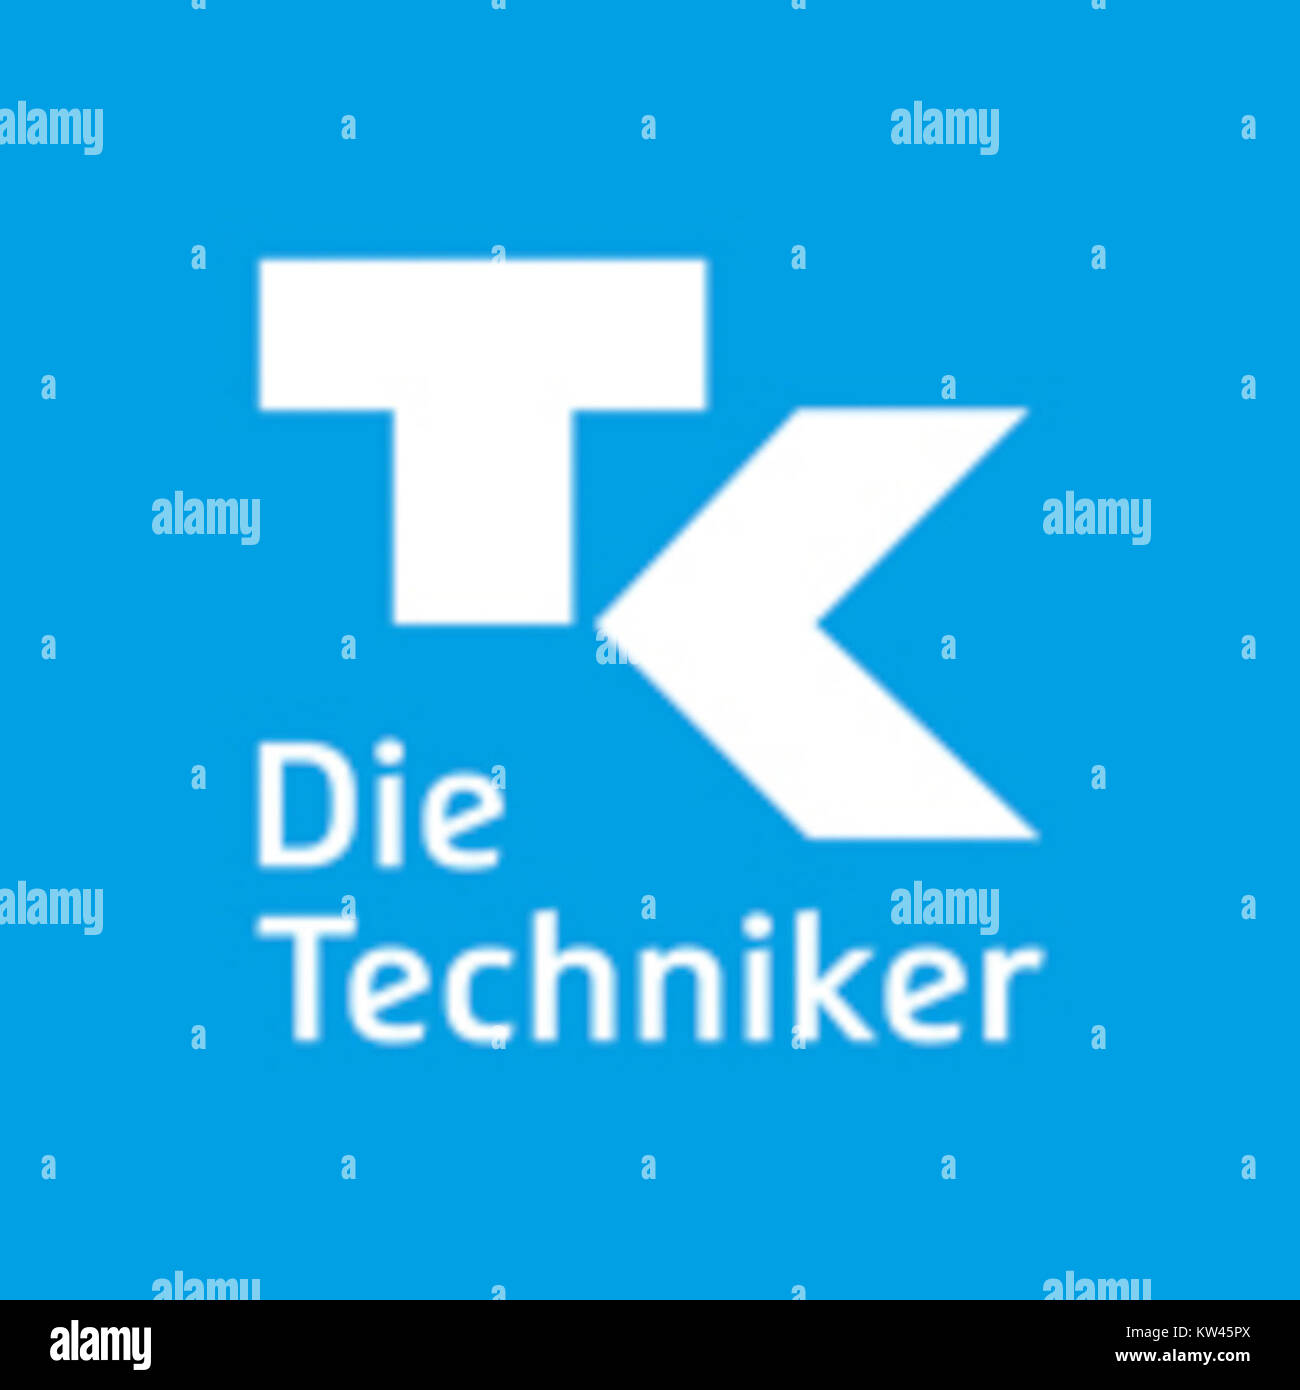 Techniker Krankenkasse Logo 2016 Foto Stock